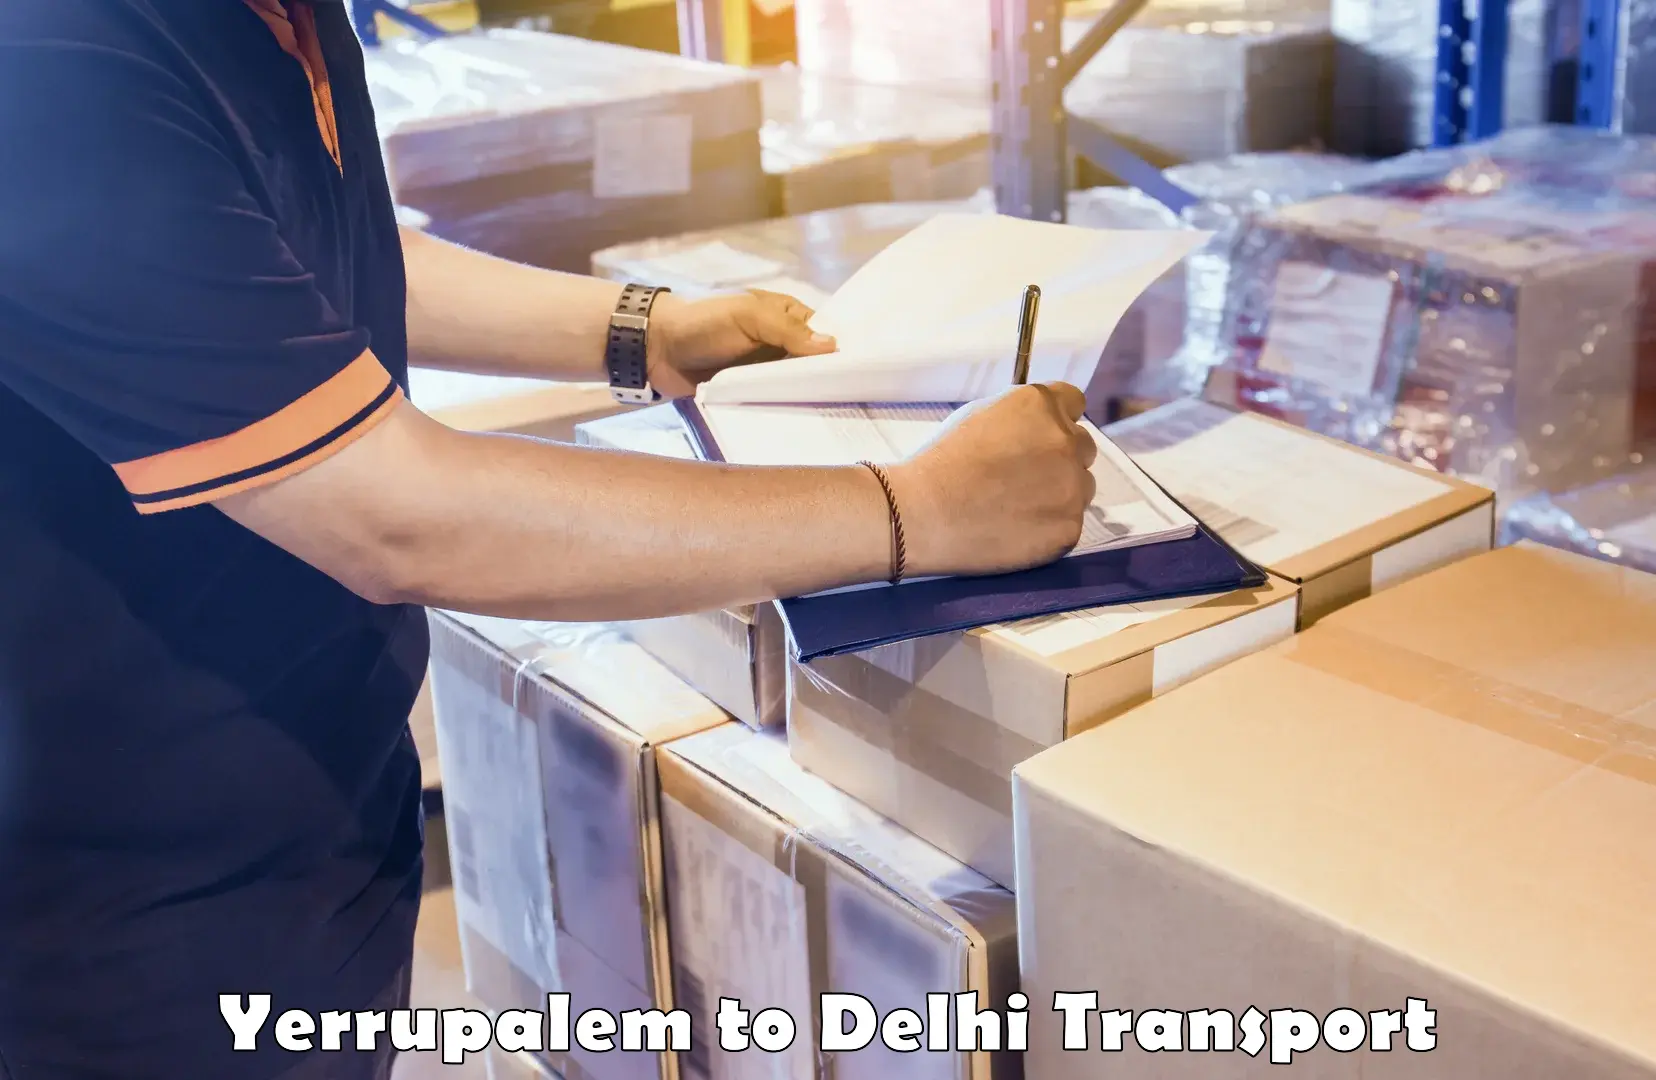 Furniture transport service Yerrupalem to East Delhi